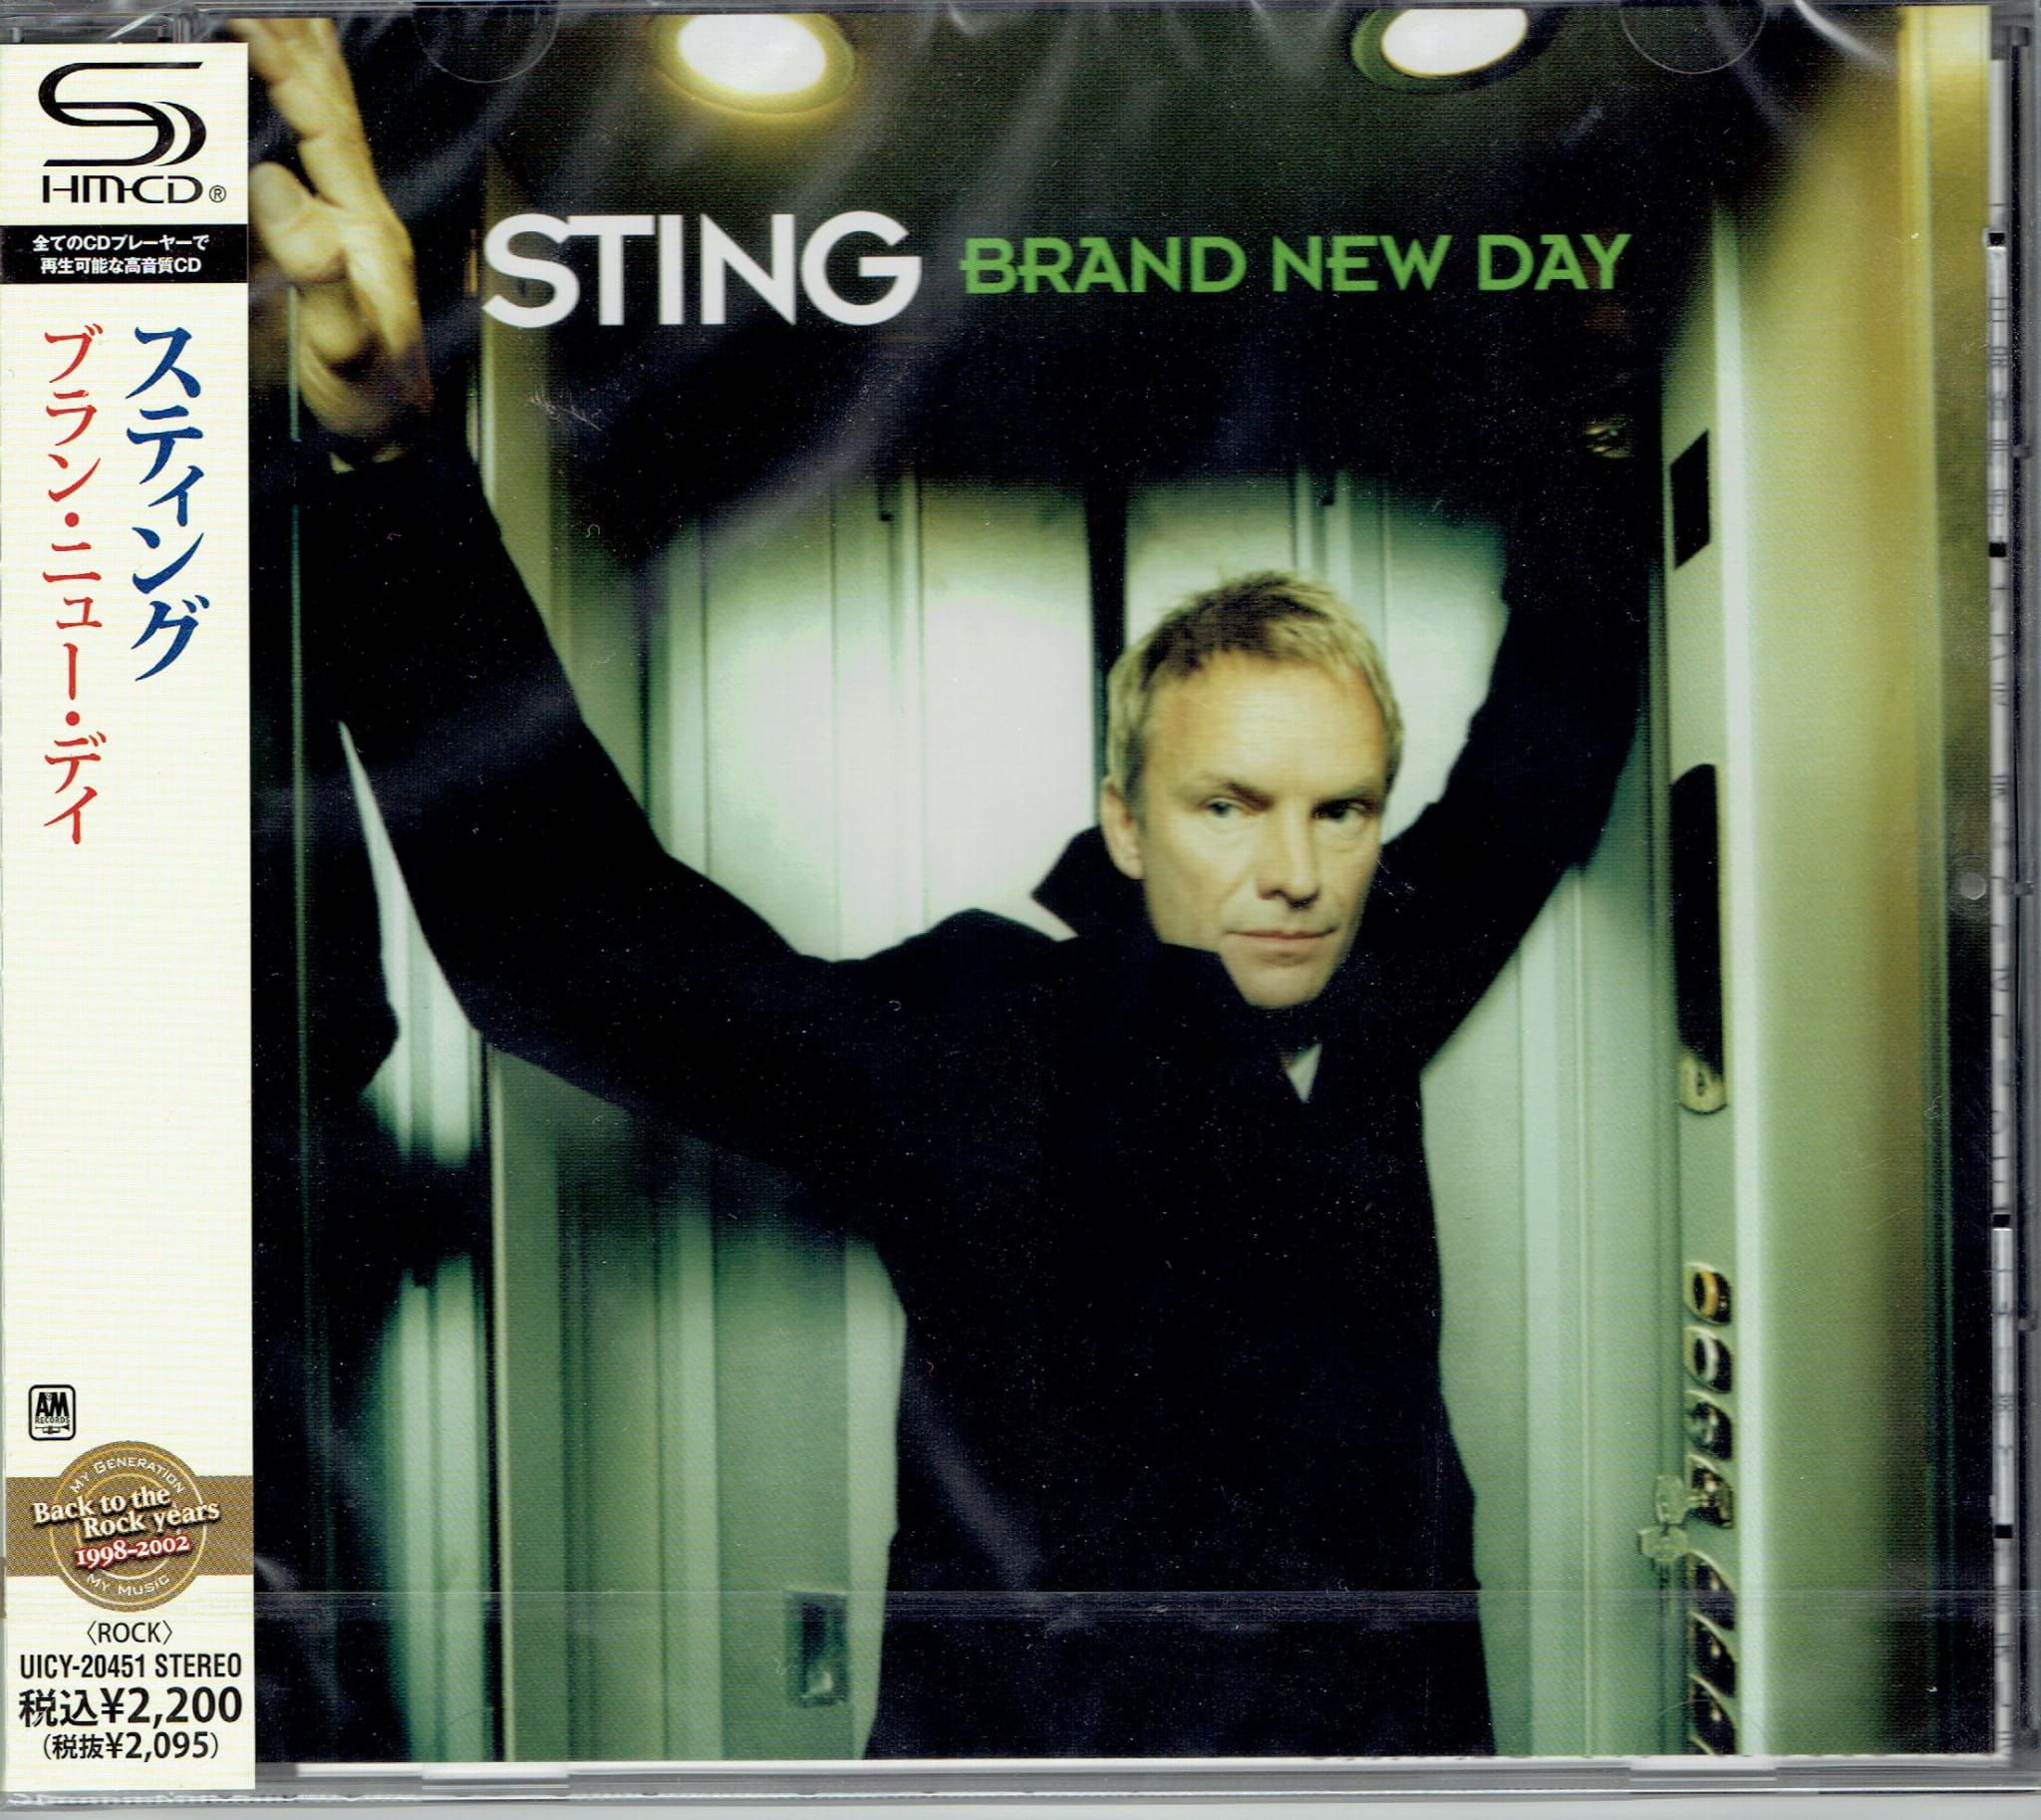 Sting cheb mami. Sting 1999 - brand New Day. Brand New Day стинг. Sting brand New Day обложка. Sting brand New Day album.